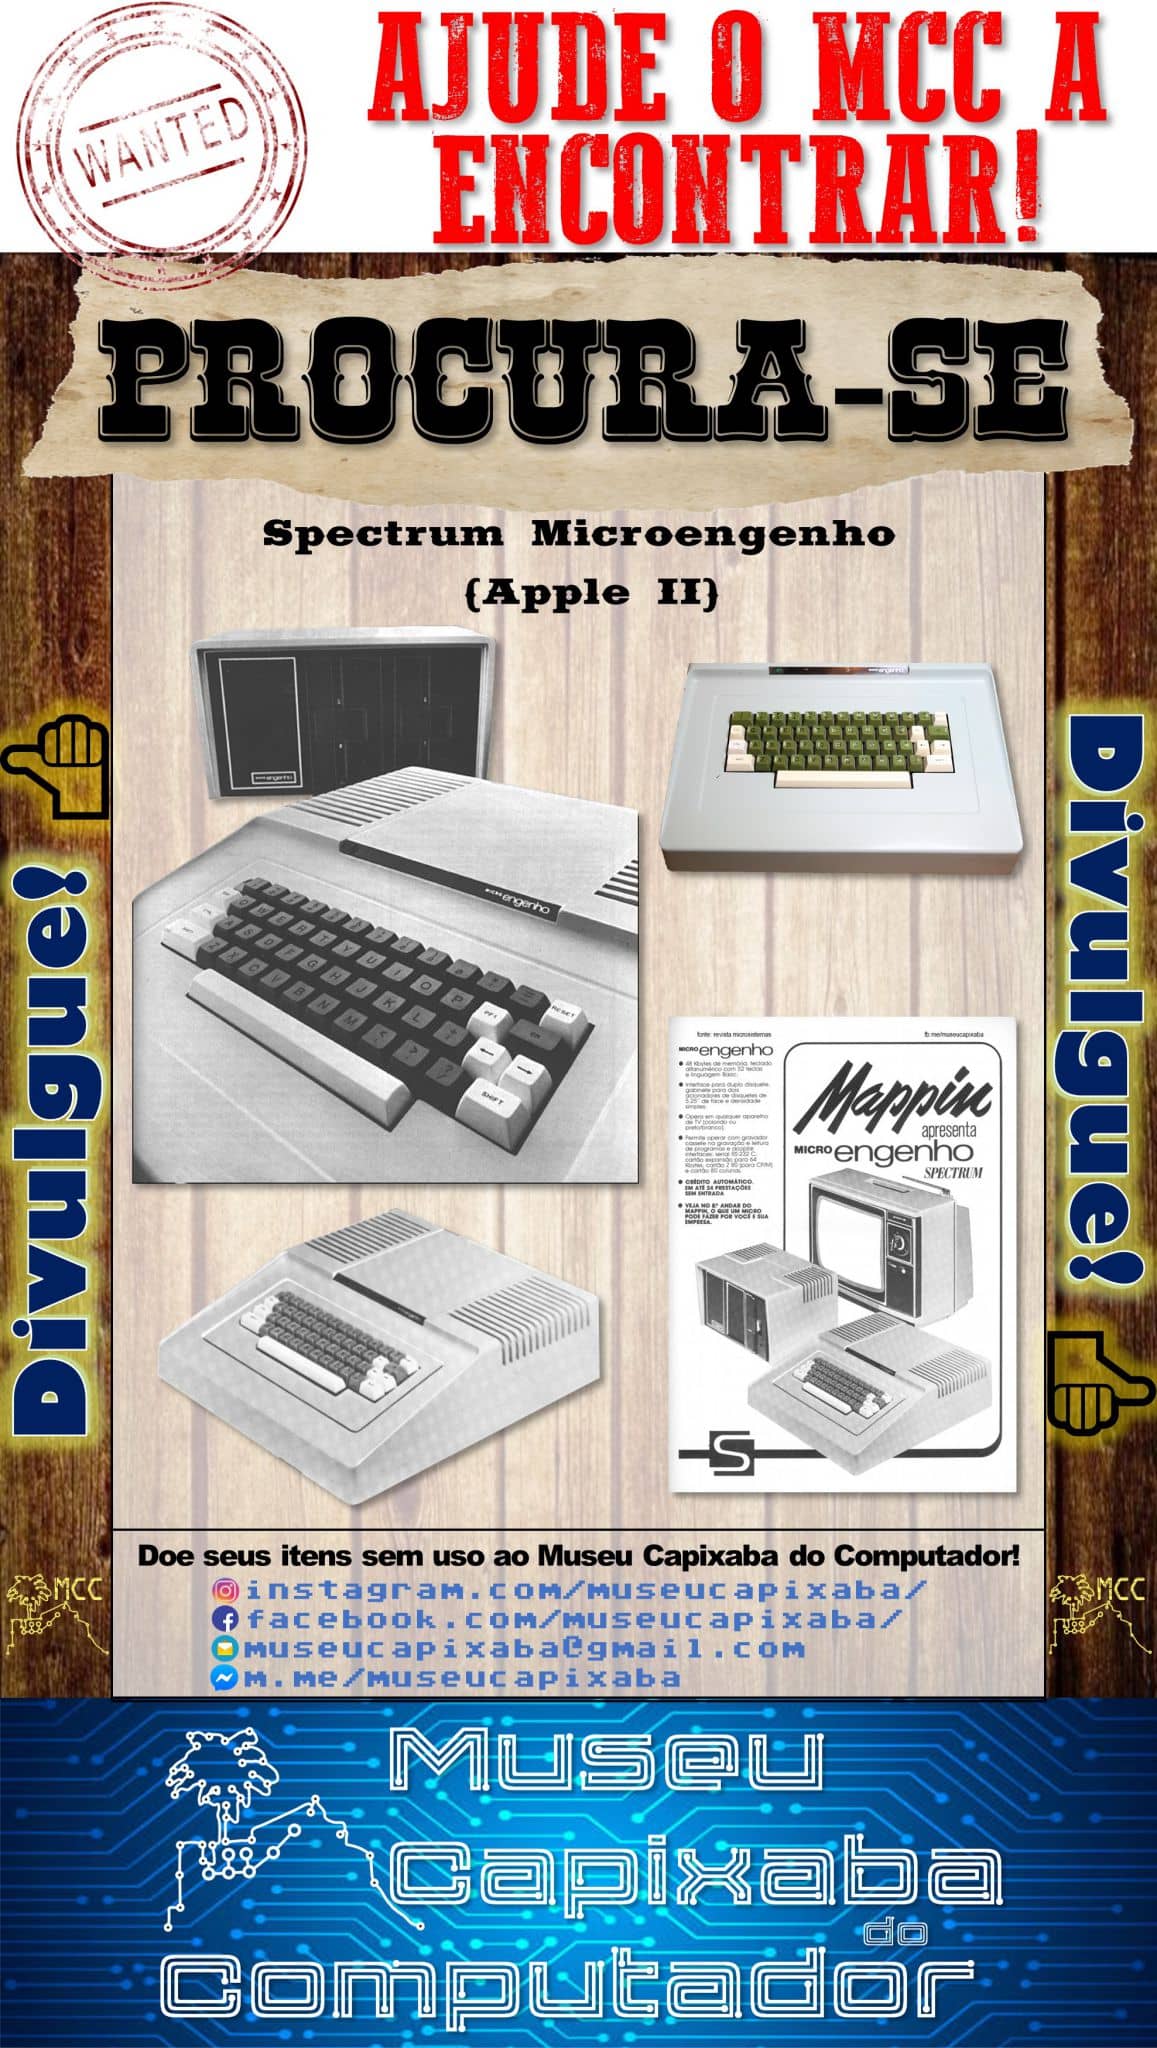 Spectrum Micro Engenho